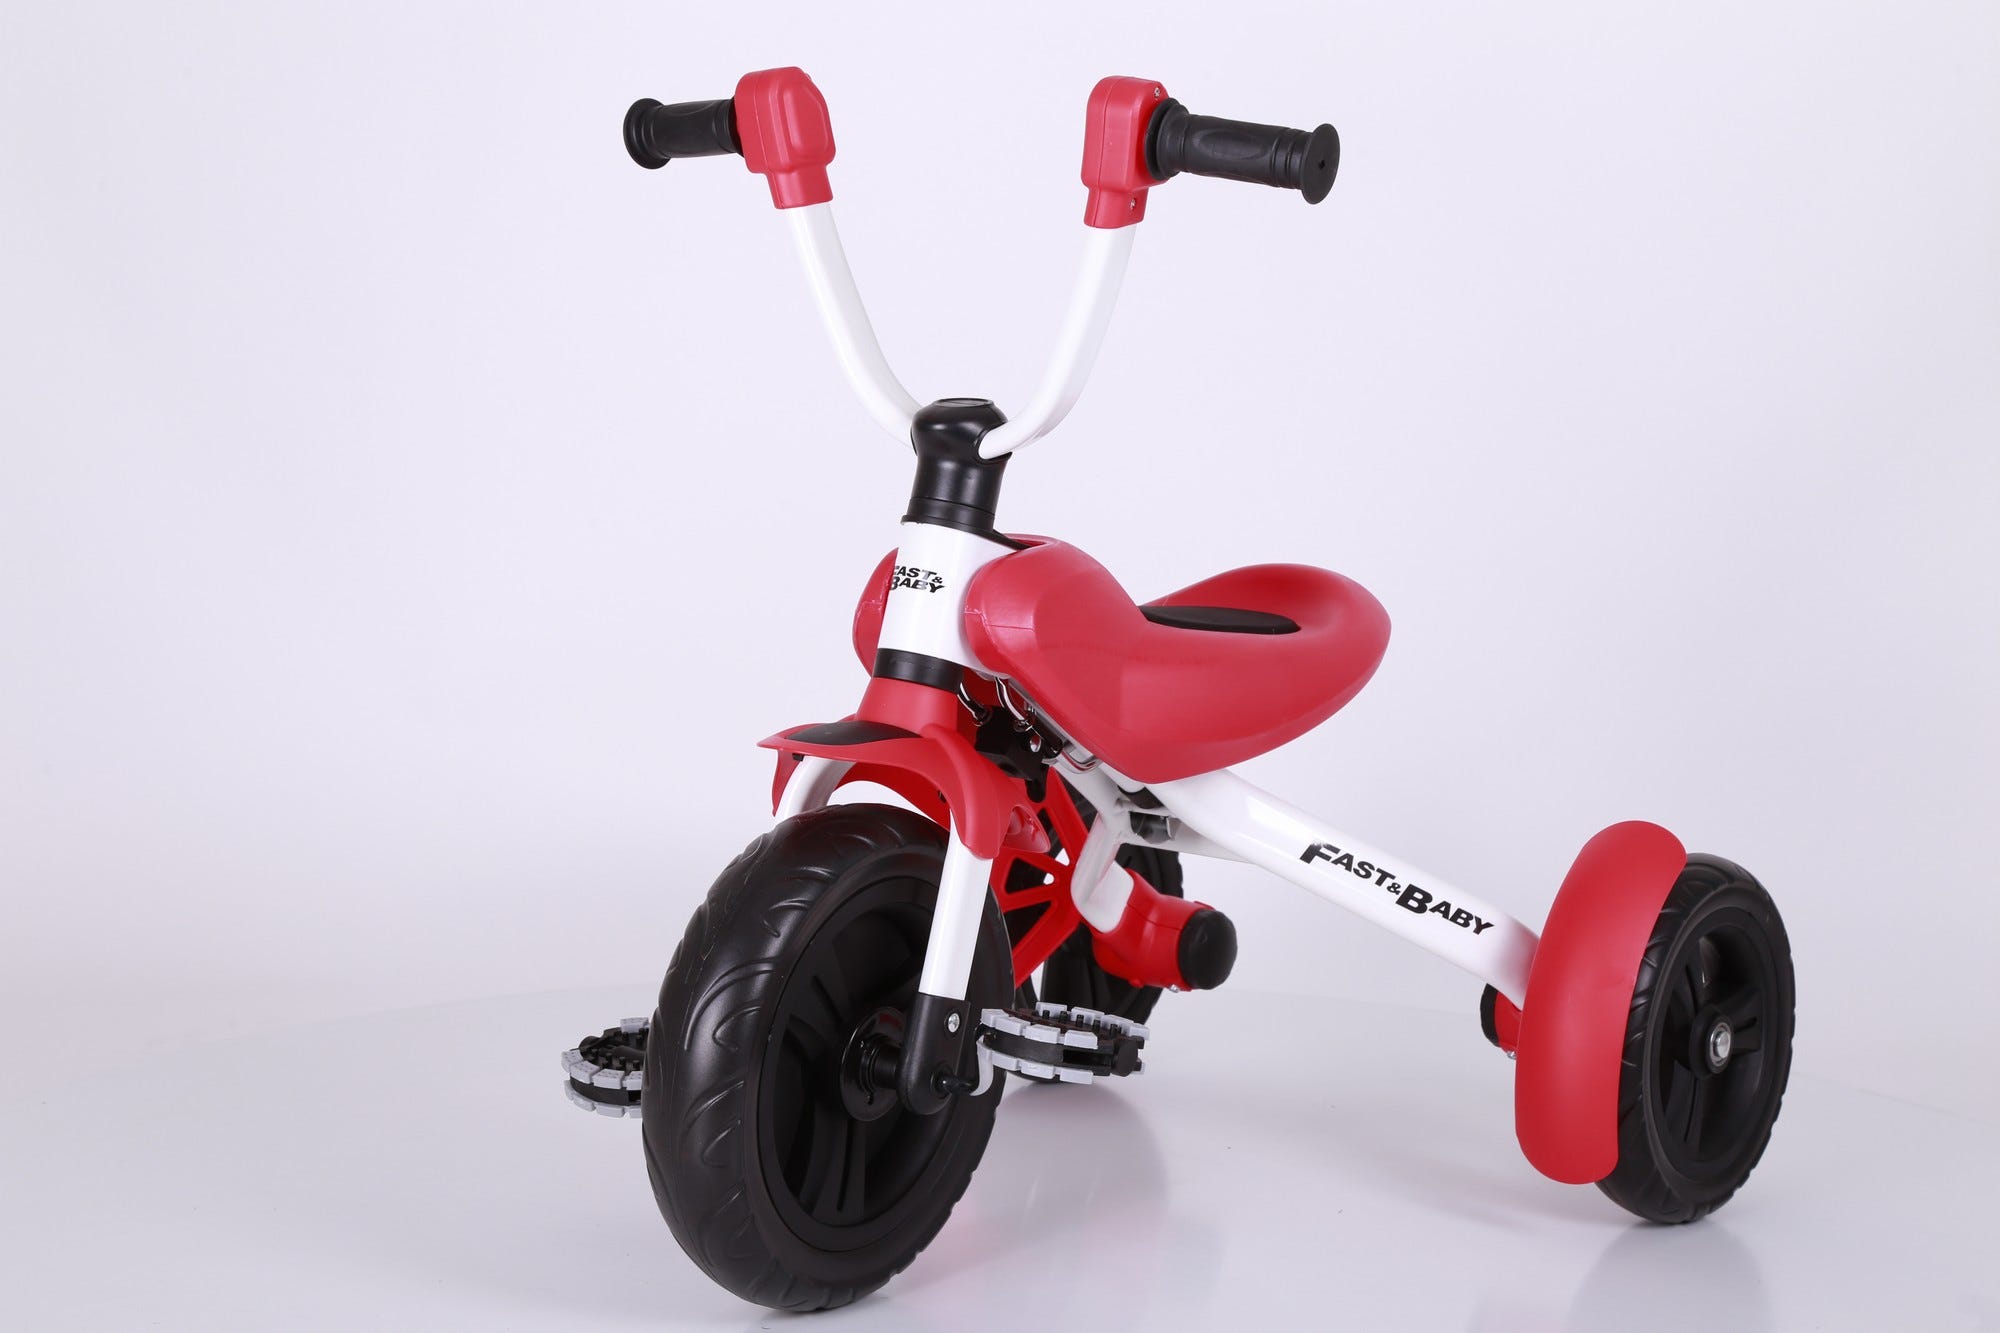 Tricycle pour enfant FAST AND BABY, pliable, roue arrière détachable,  pédale semi-caoutchouc anti dérapant